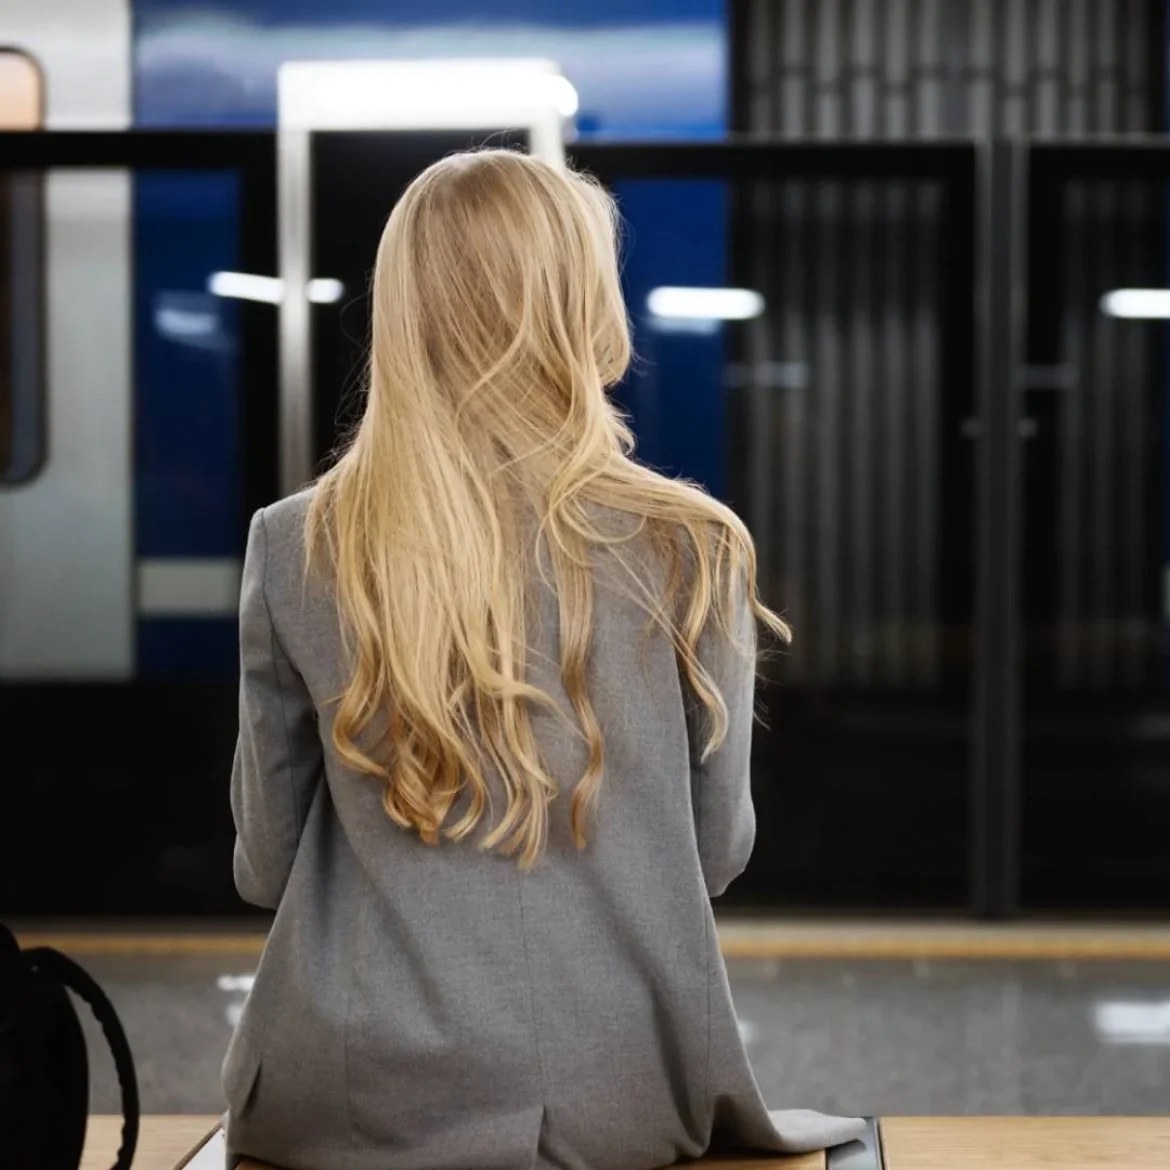 Vrouw alleen op een metro station